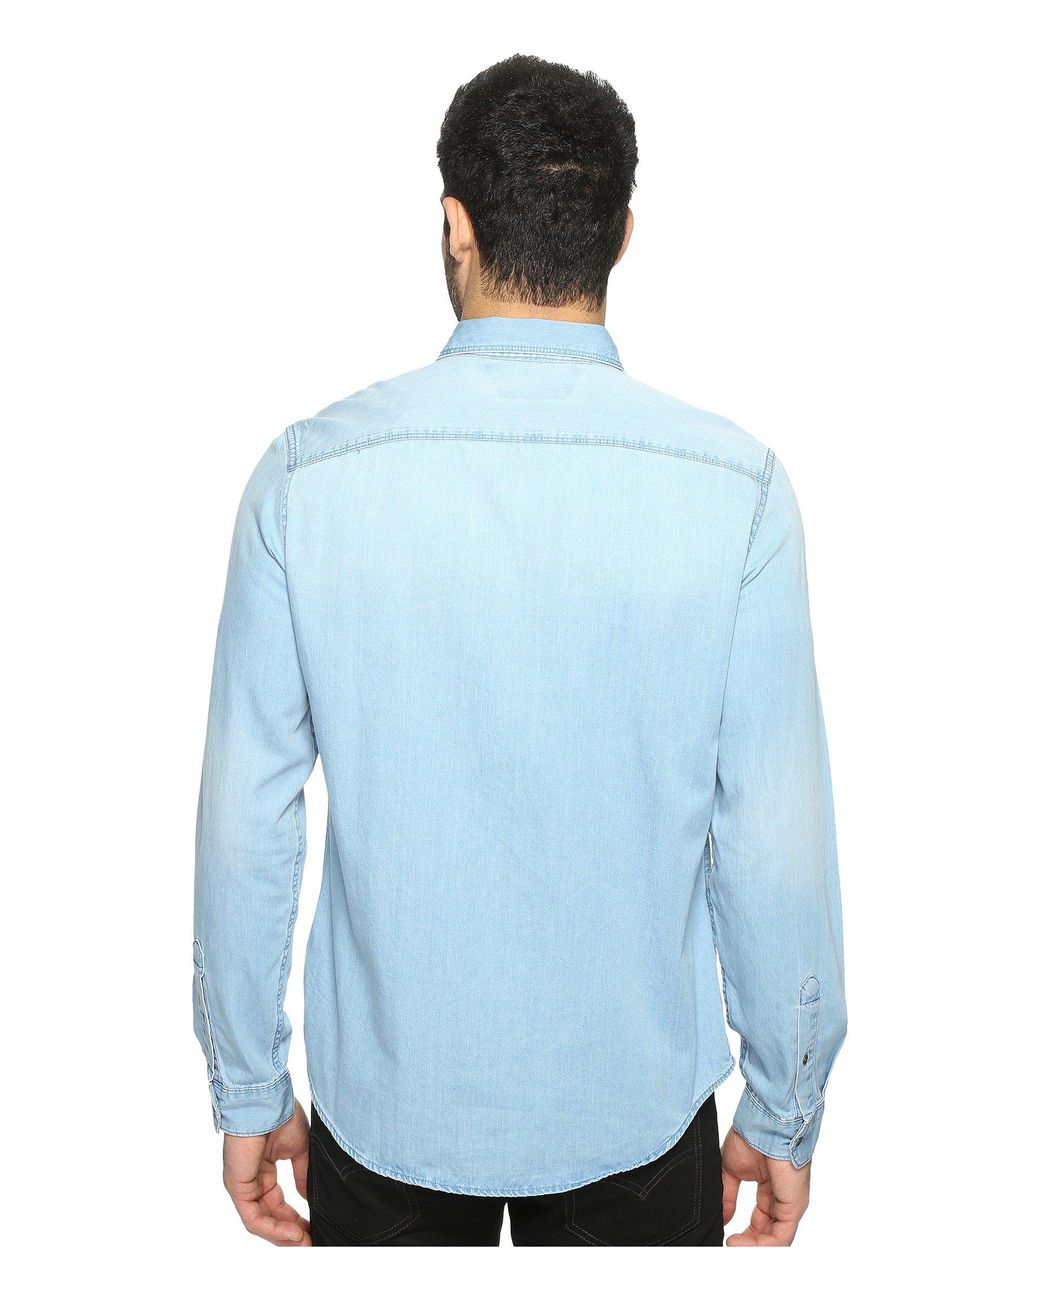 Calvin Klein Denim Shirt (worn Indigo) Men's Clothing in Blue for